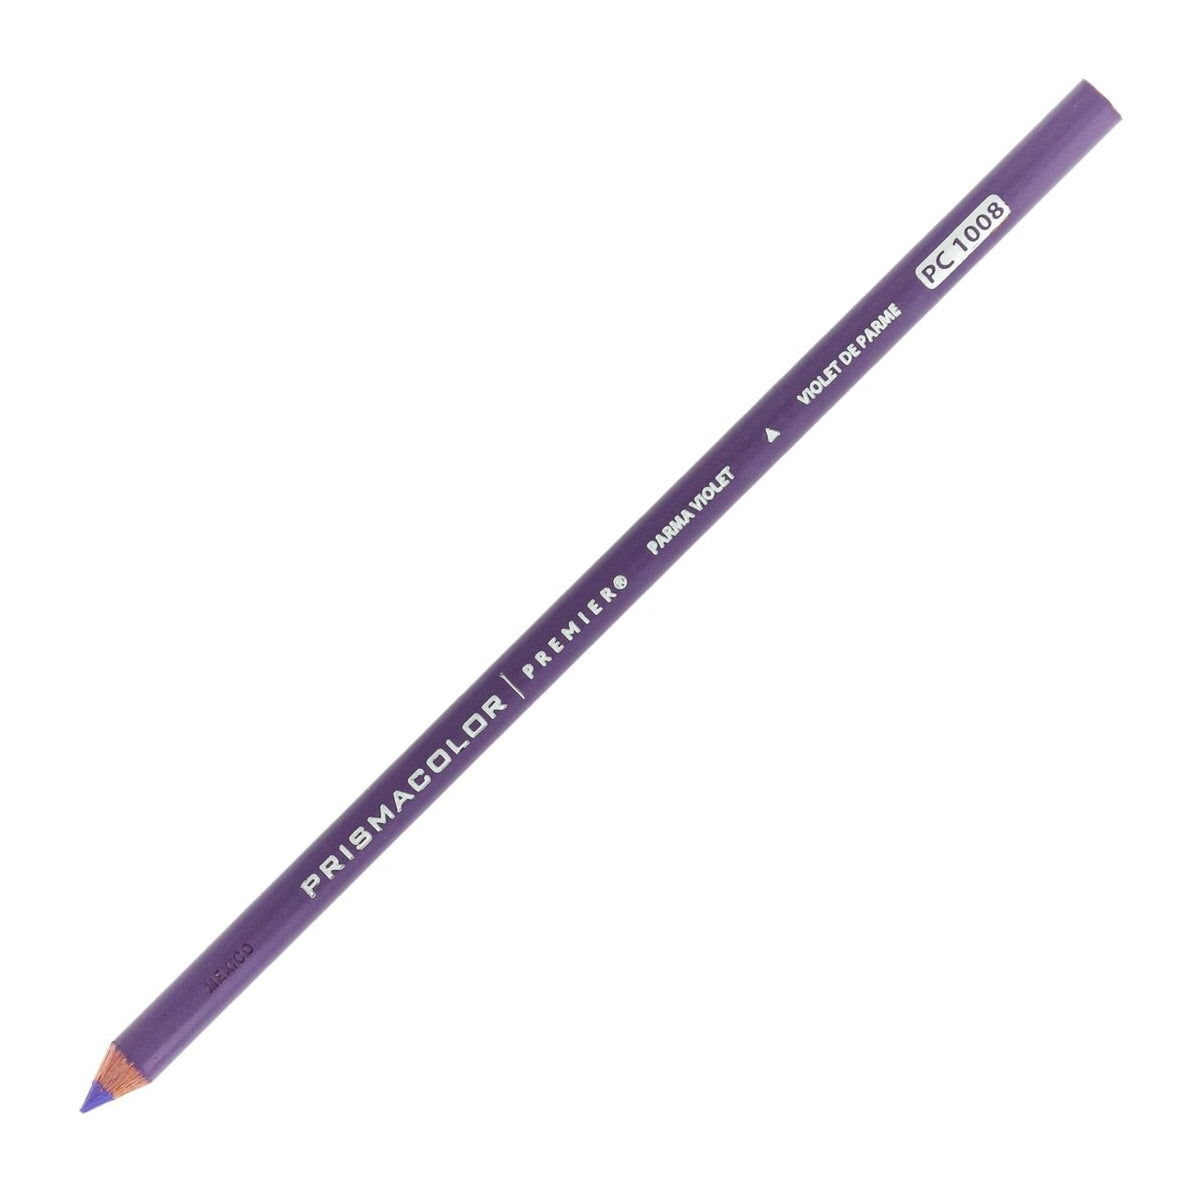 Prismacolor Premier Colored Pencil - Parma Violet 1008 - merriartist.com